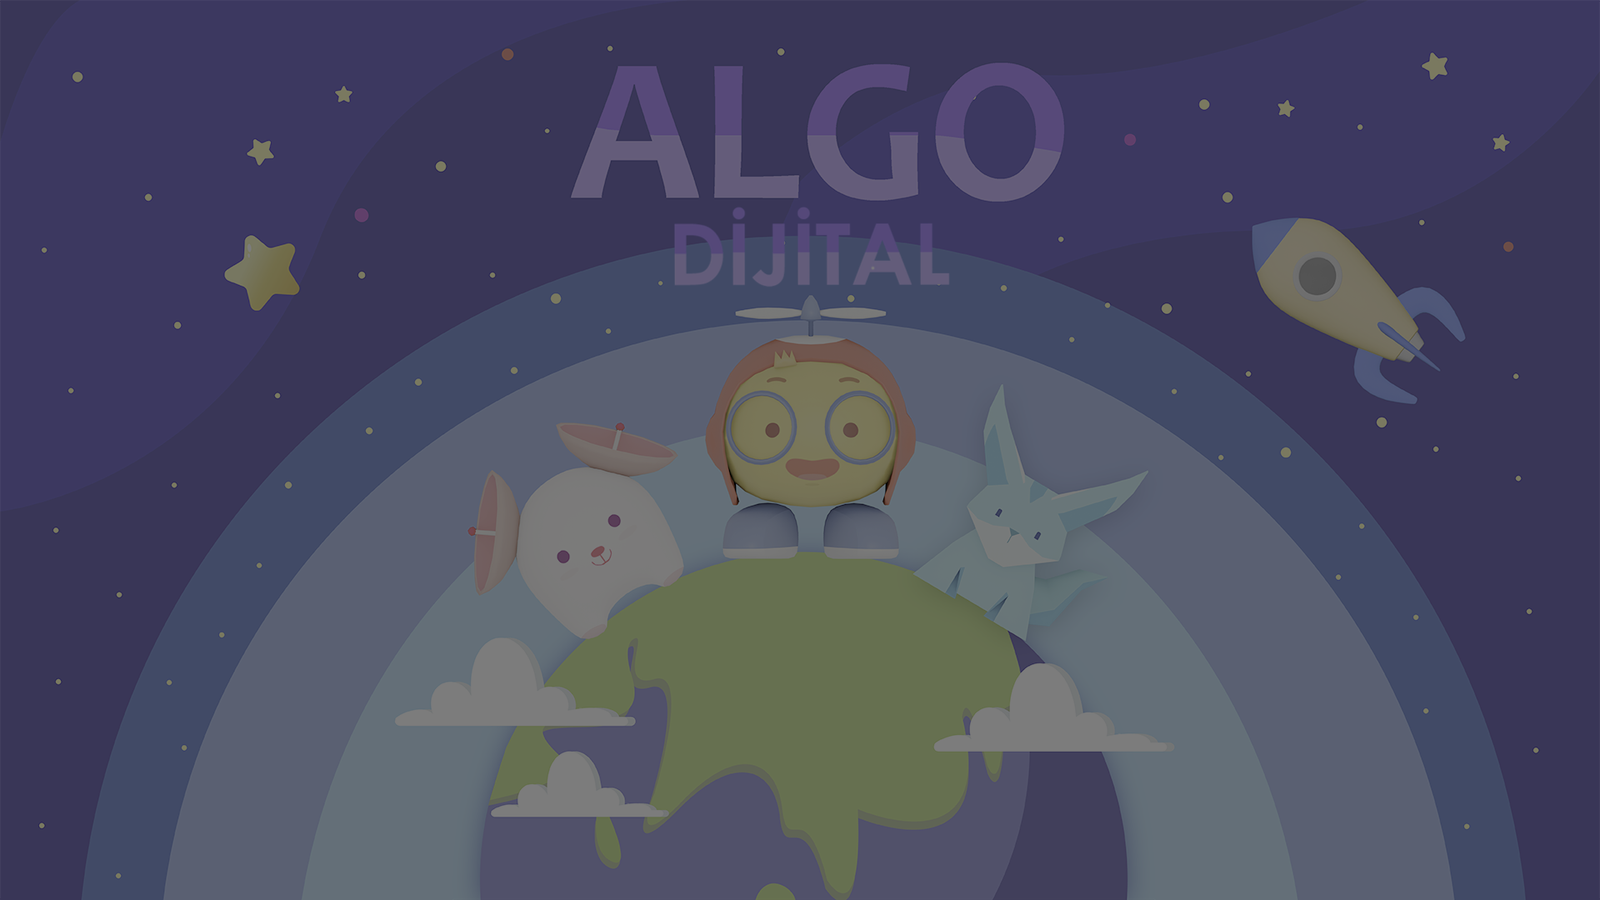 Algo’dan Yeni Dijital Kodlama Oyunu